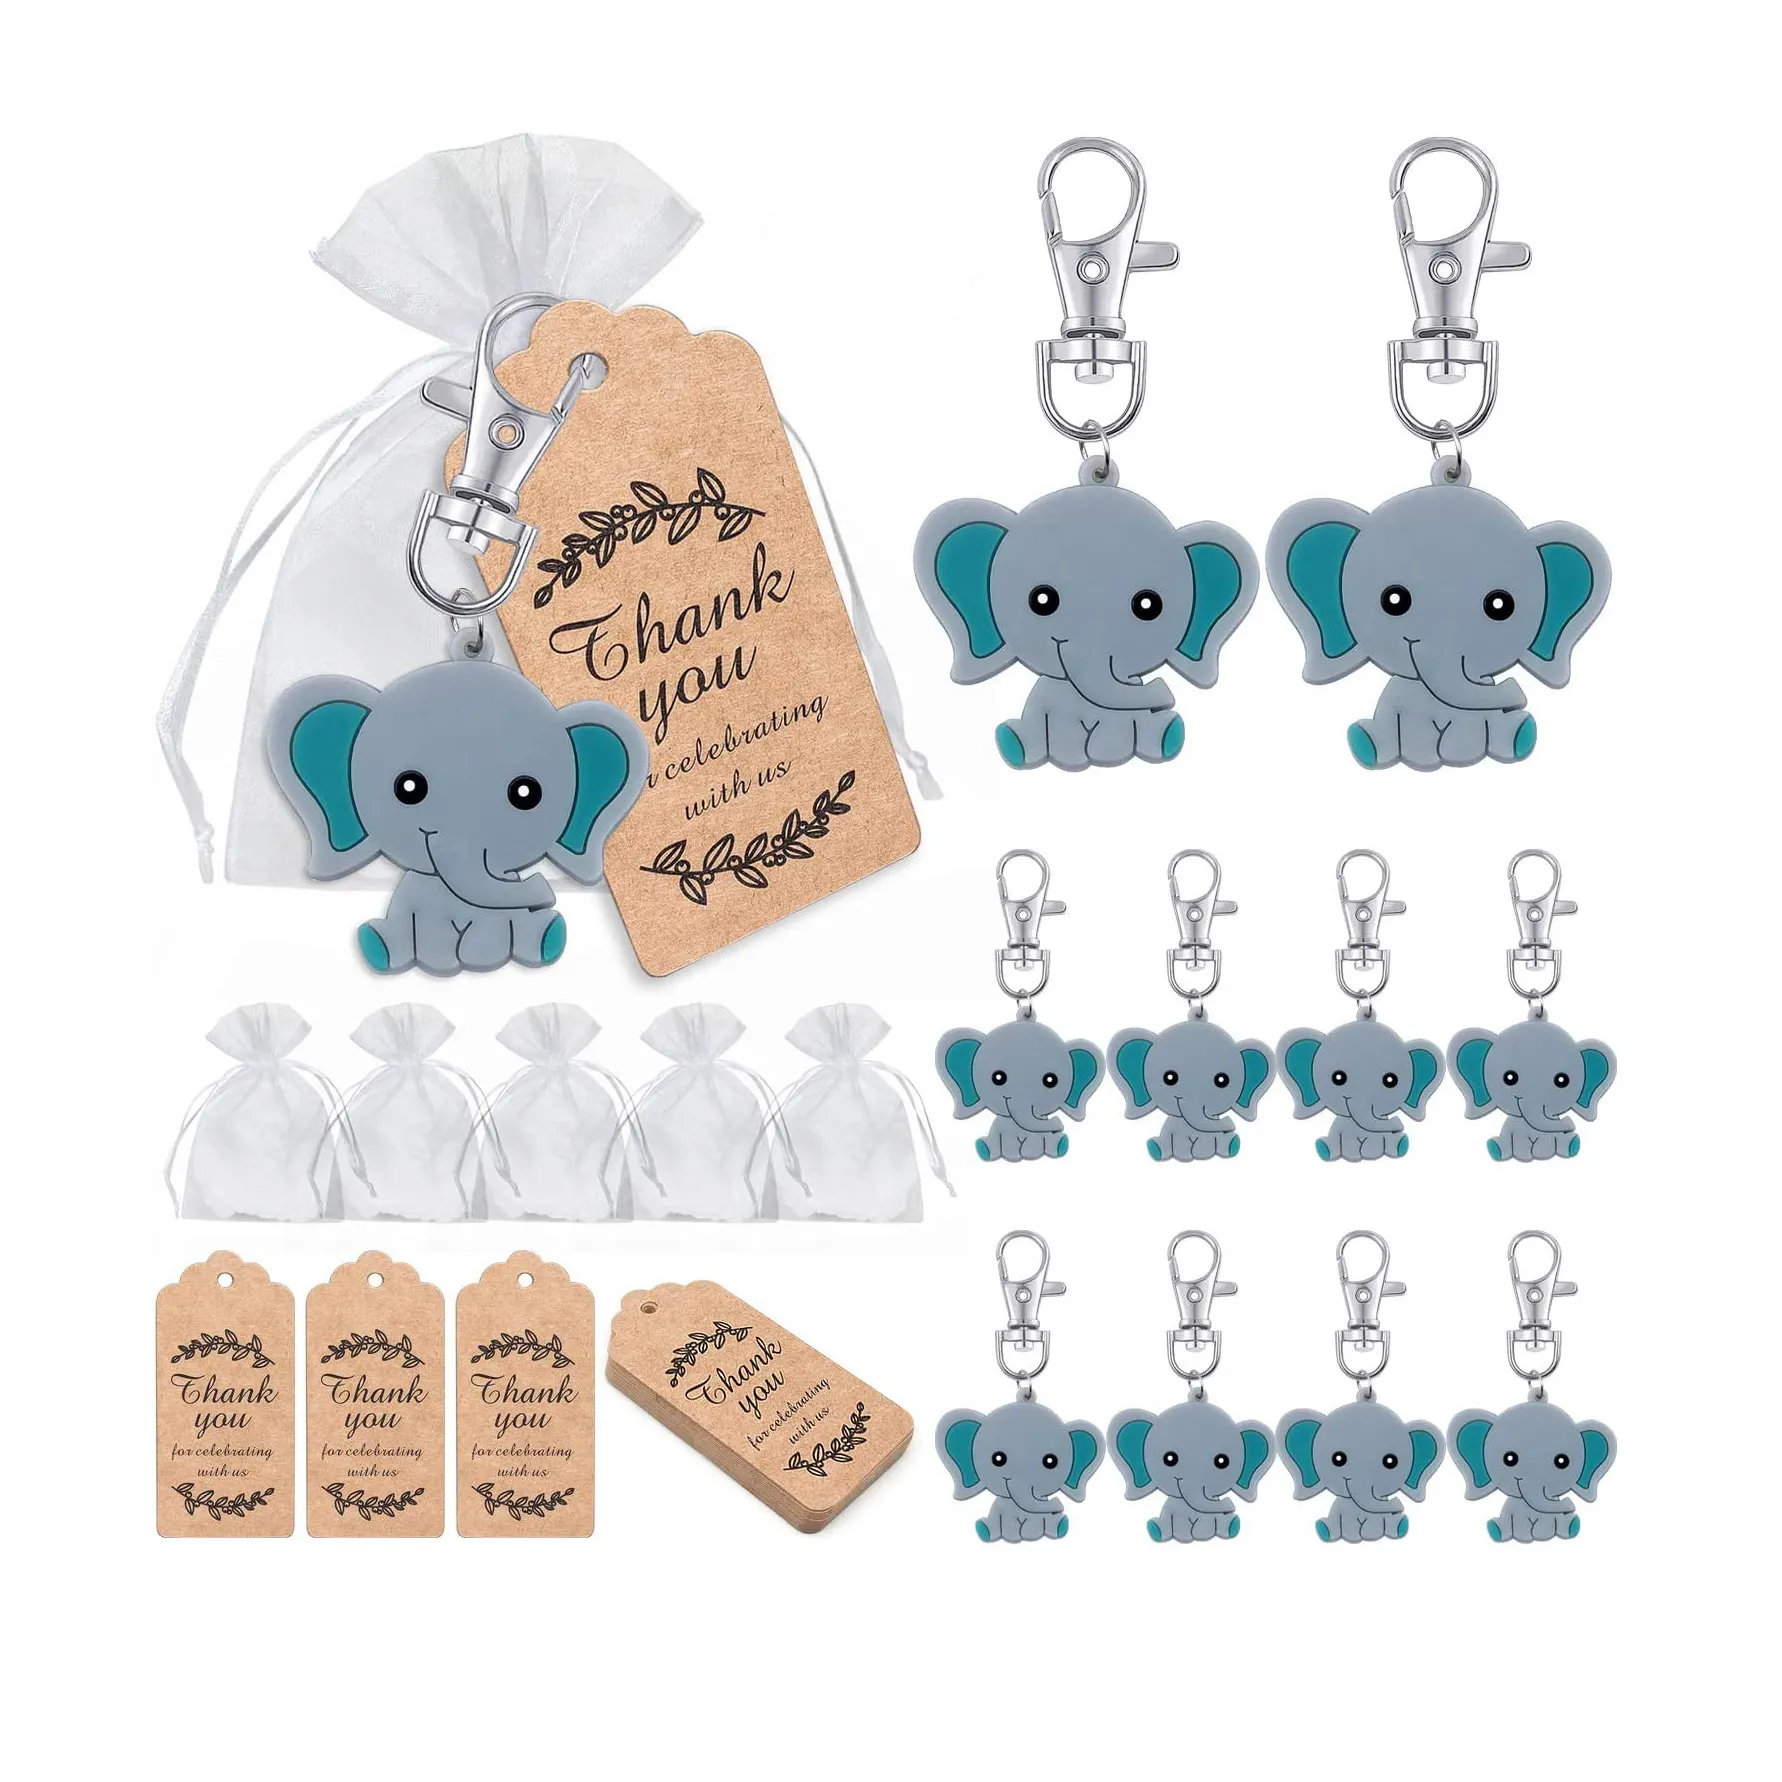 Llaveros personalizados con temática de elefante para Baby Shower, regalos de fiesta para niños, suministros de cumpleaños